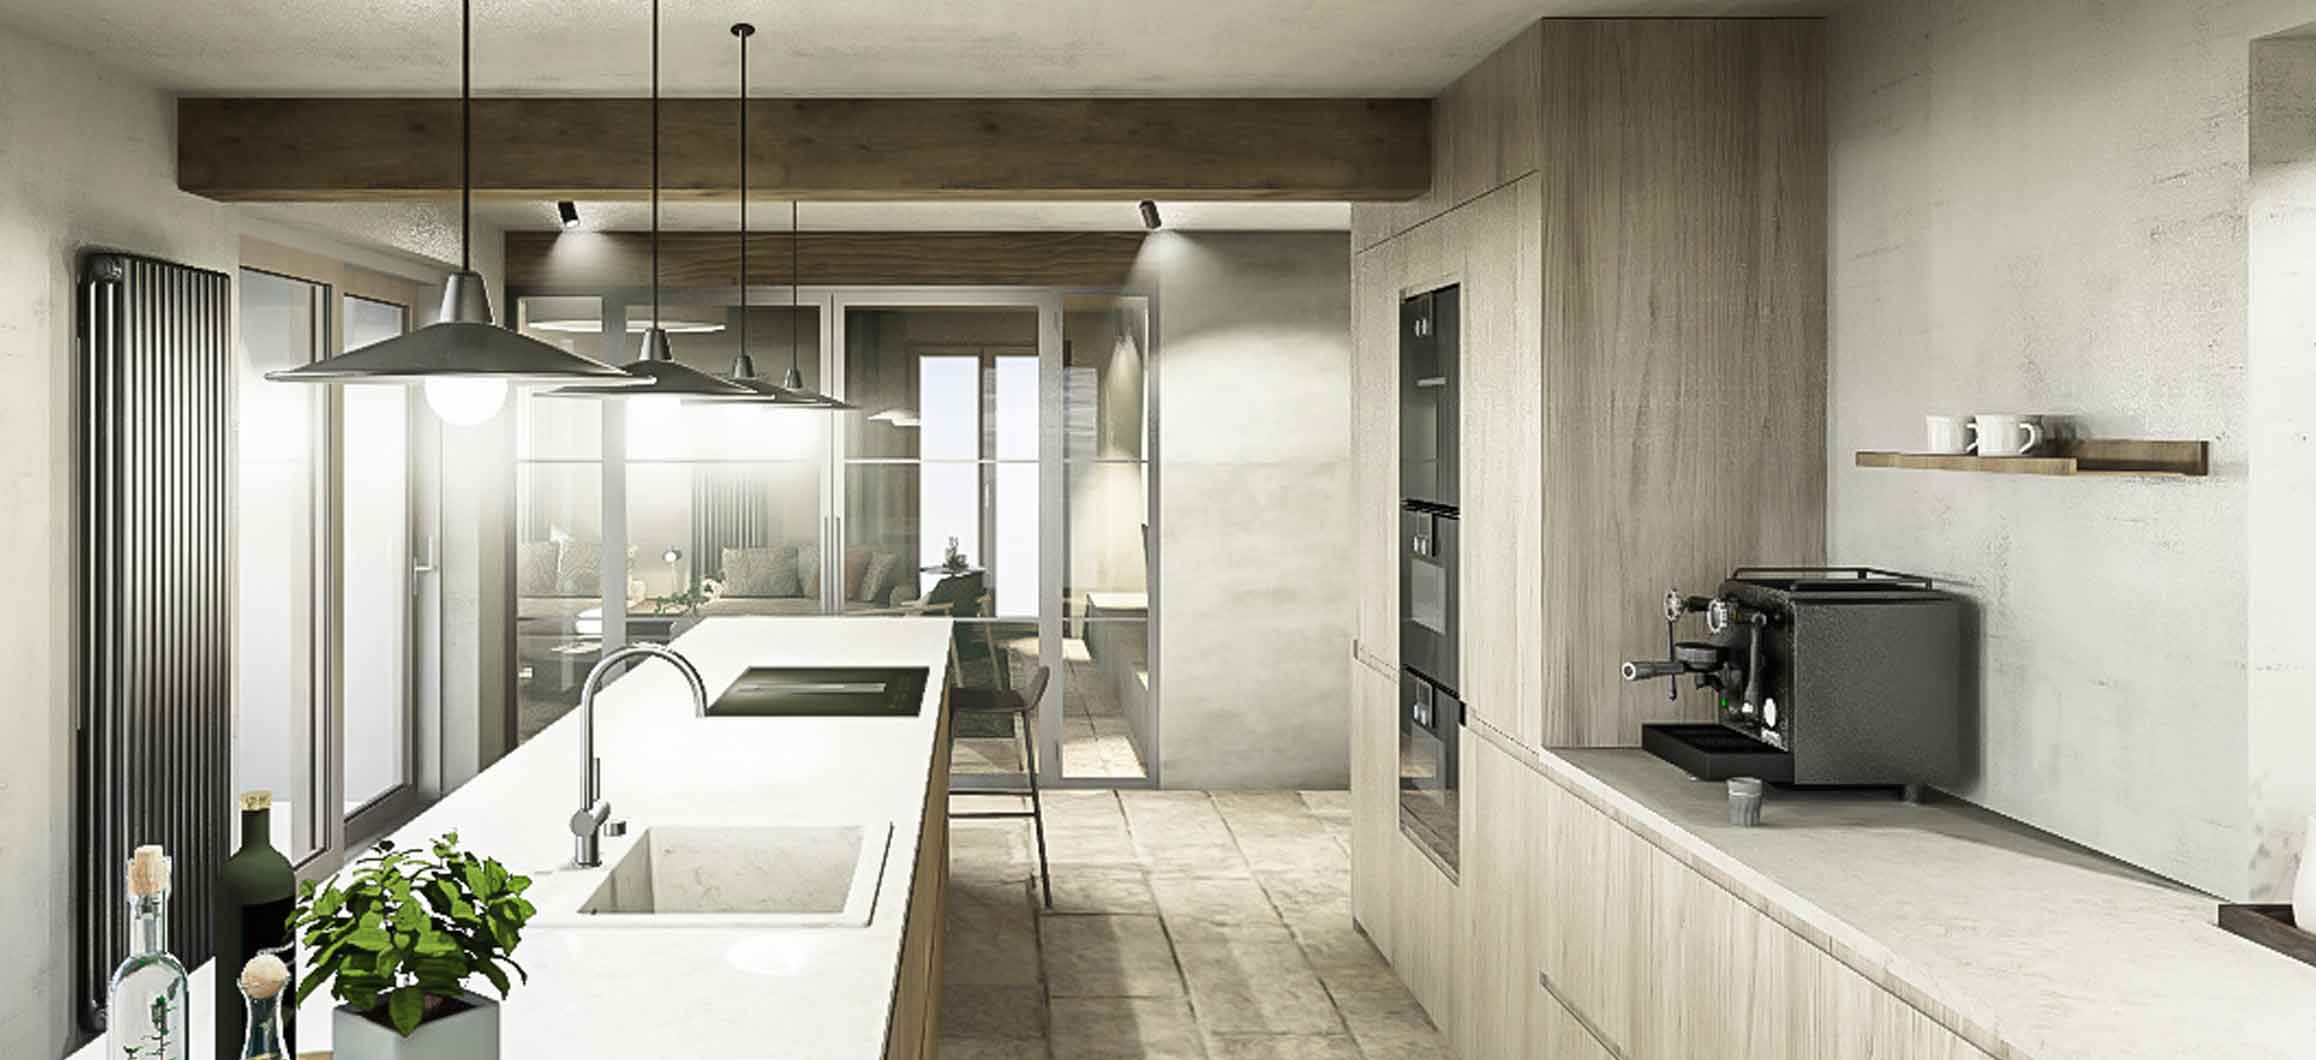 3D-Visualisierung minimalistische Küche mit Kochinsel, Holz, Naturstein, Stahl, Matteobrioni